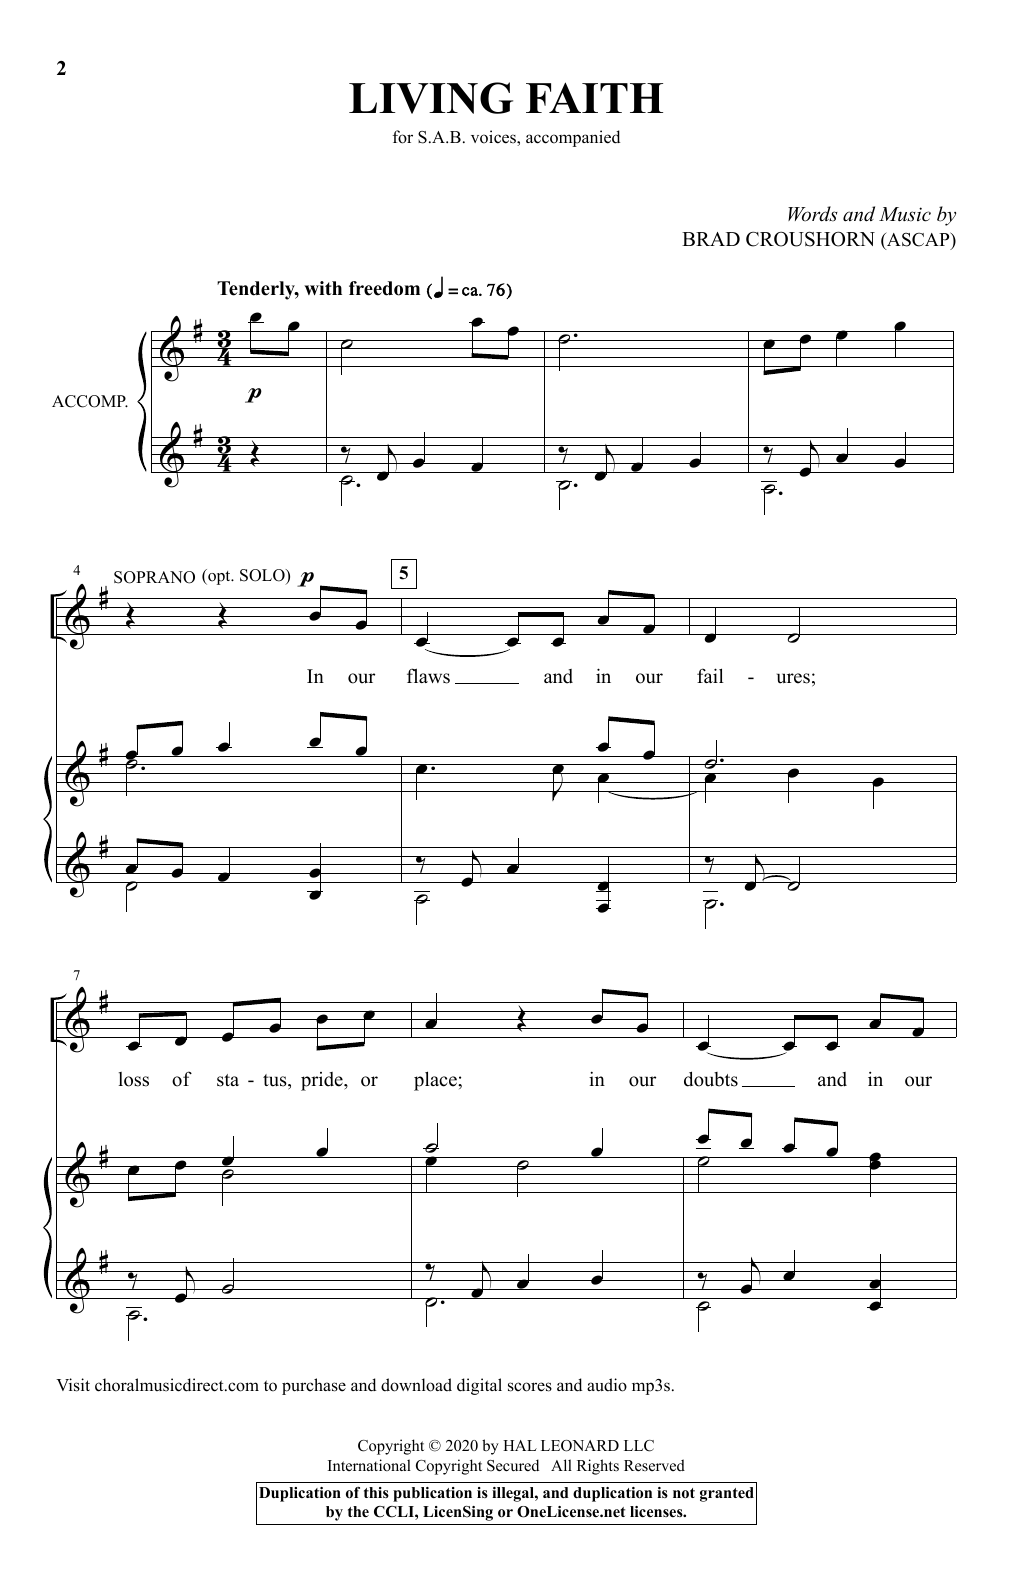 Brad Croushorn Living Faith Sheet Music Notes & Chords for SAB Choir - Download or Print PDF